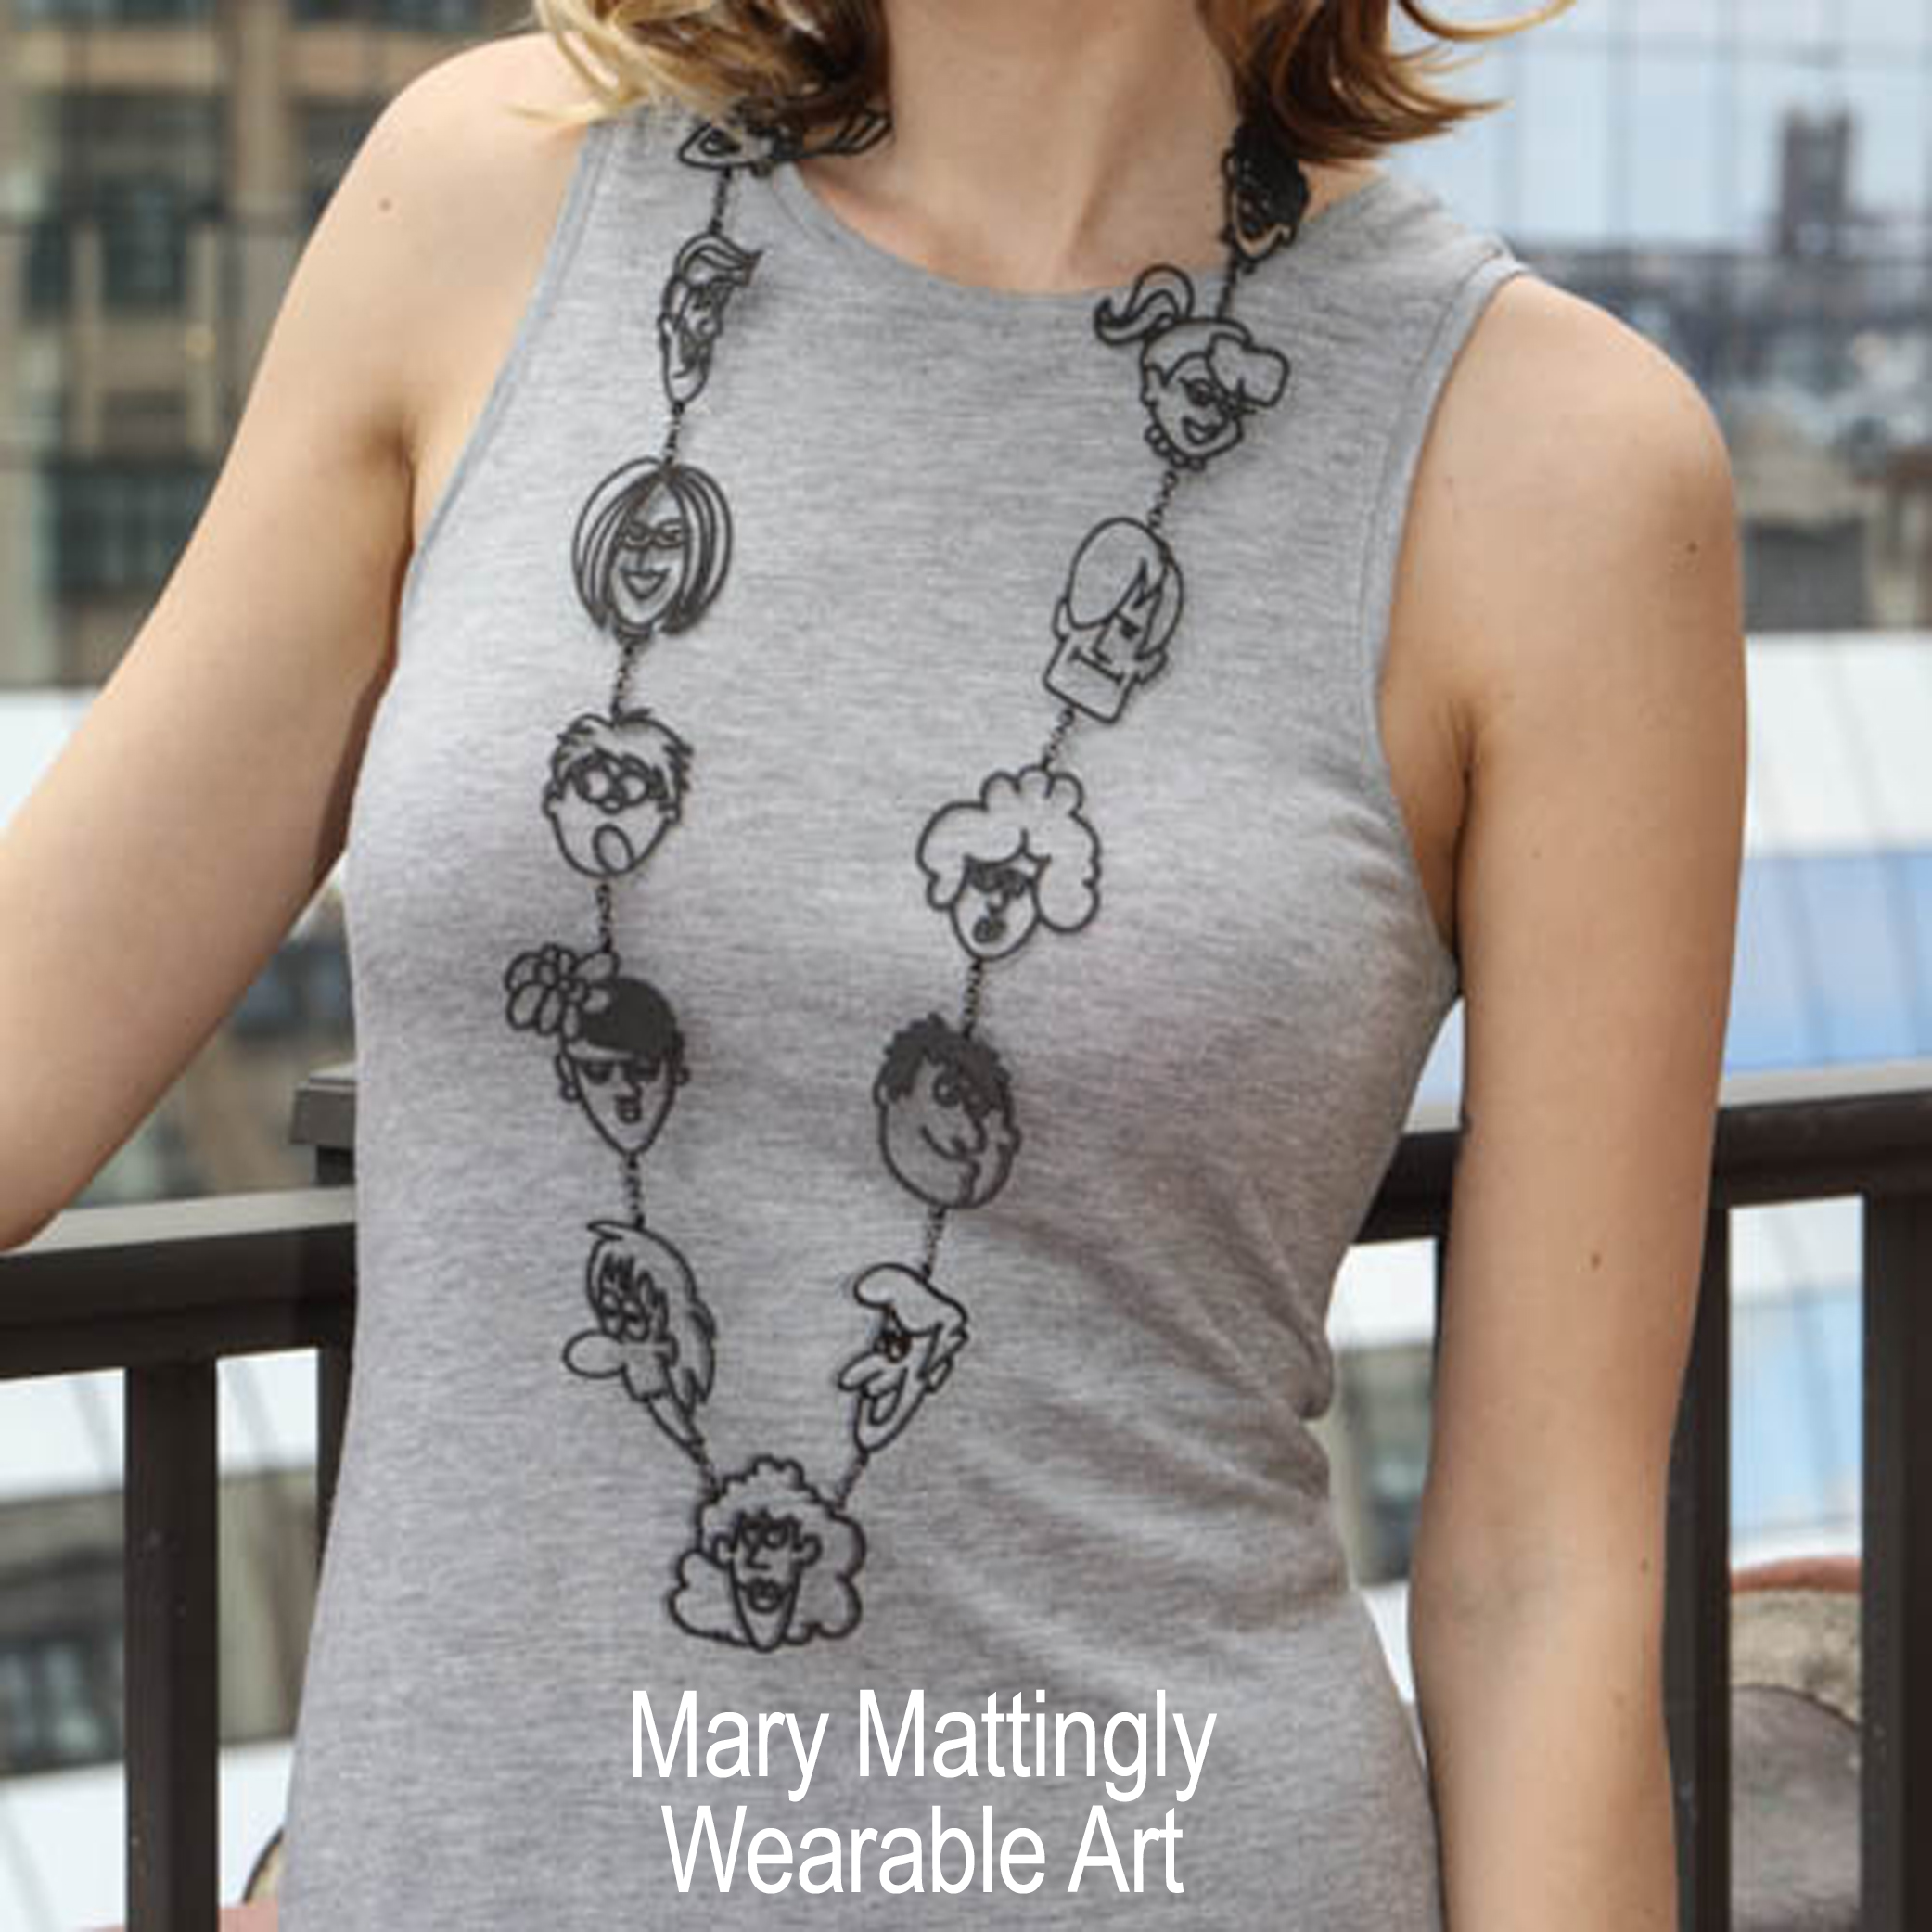 Mary Mattingly Wearable Art